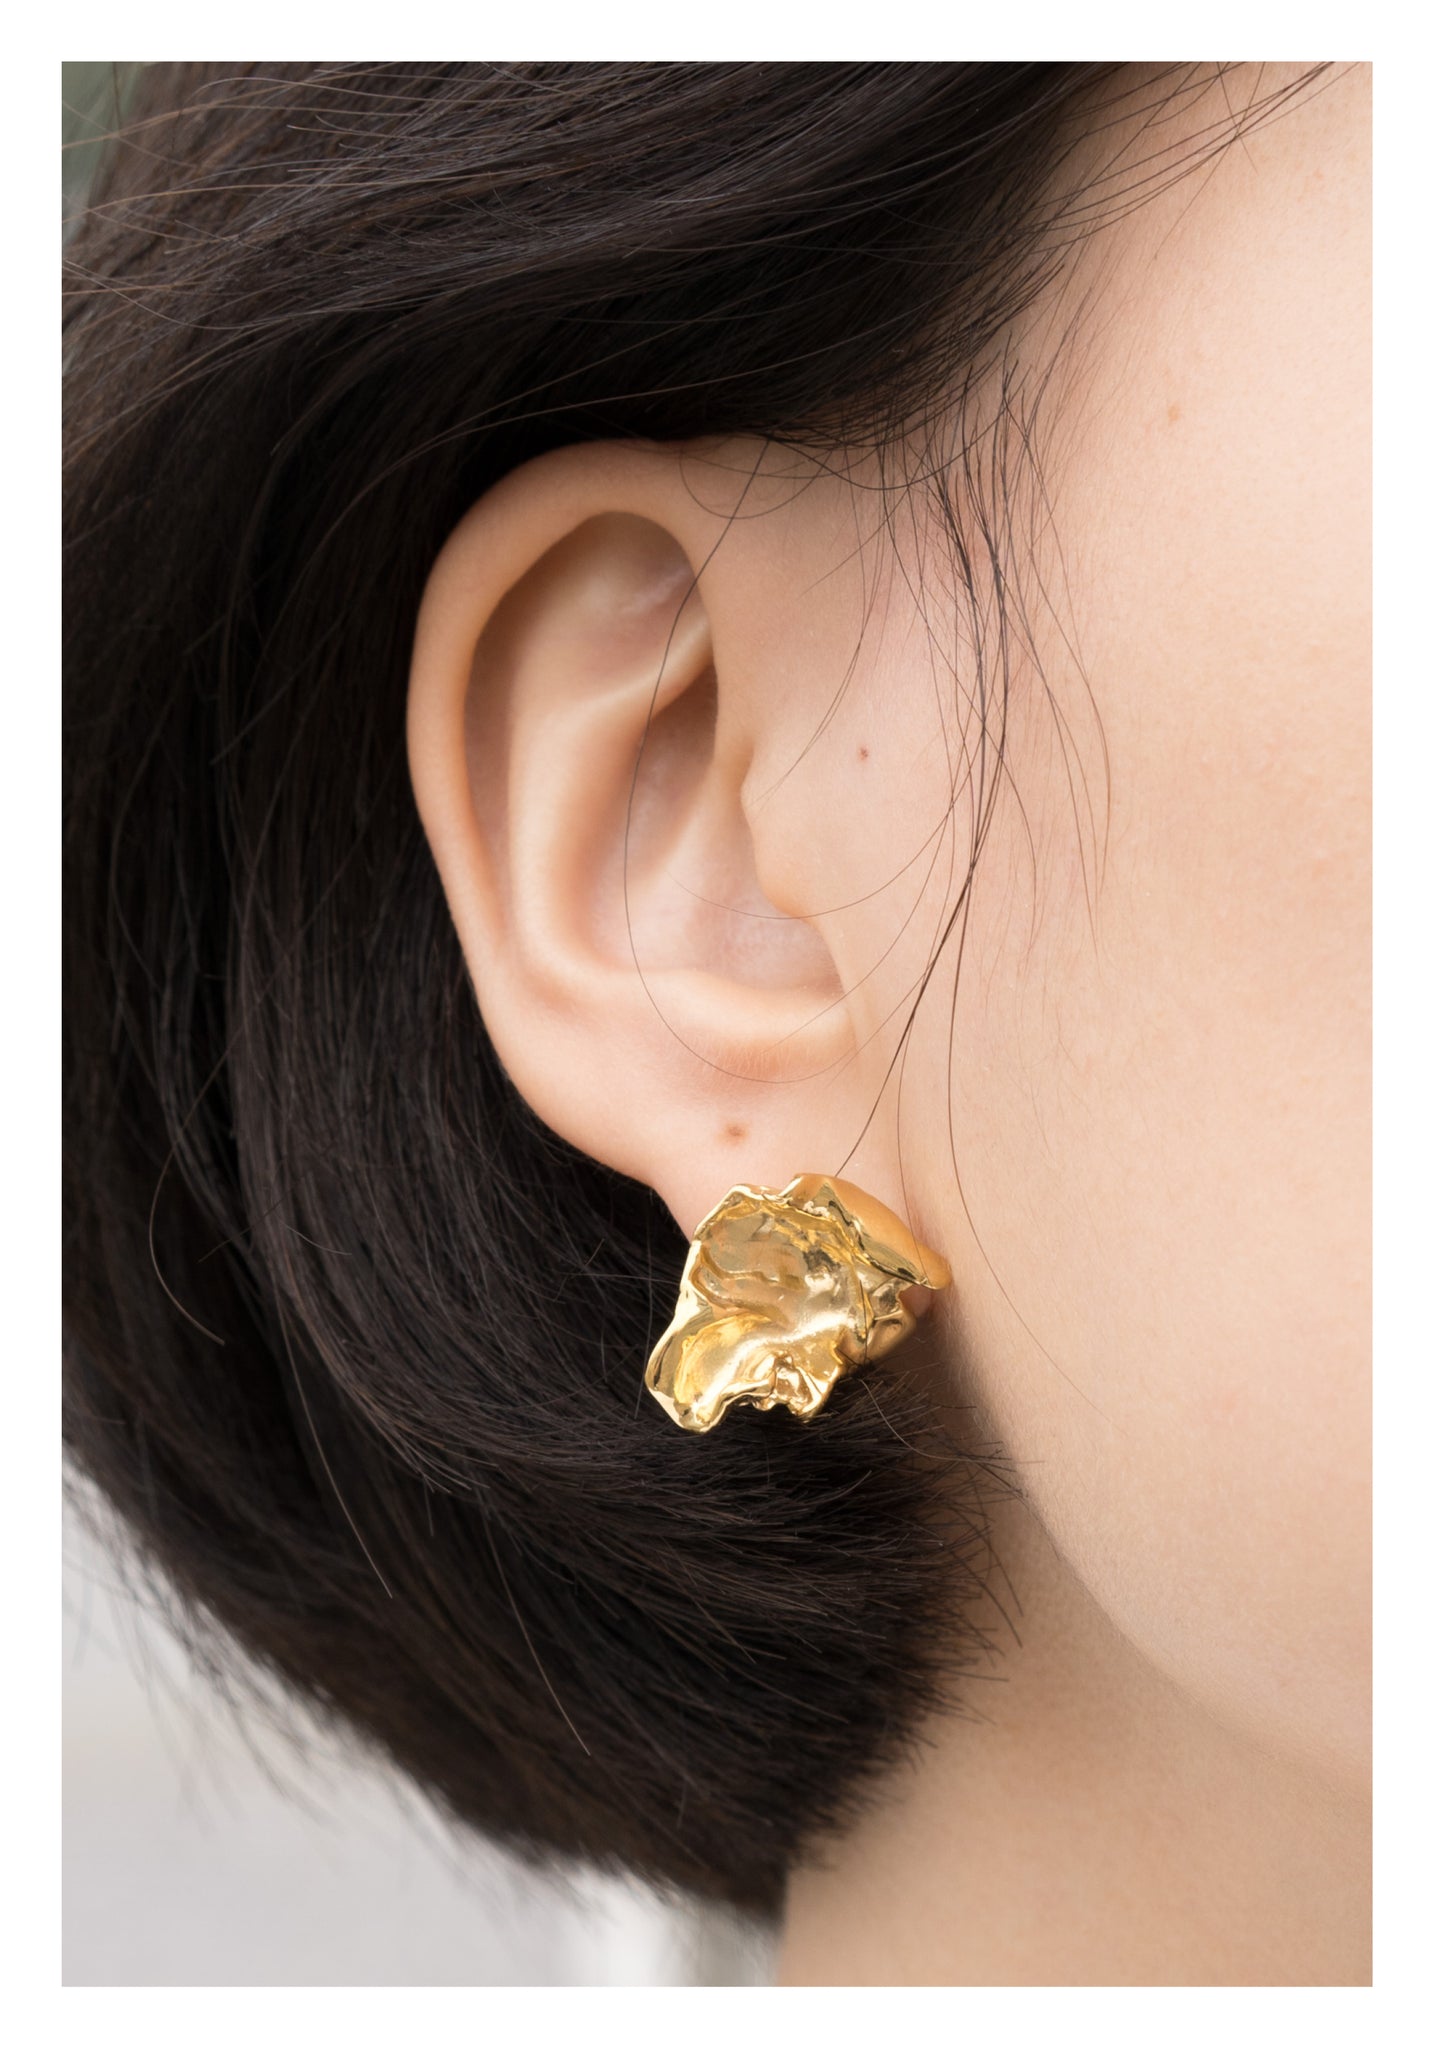 925 Silver Golden Organic Foil Earrings - whoami